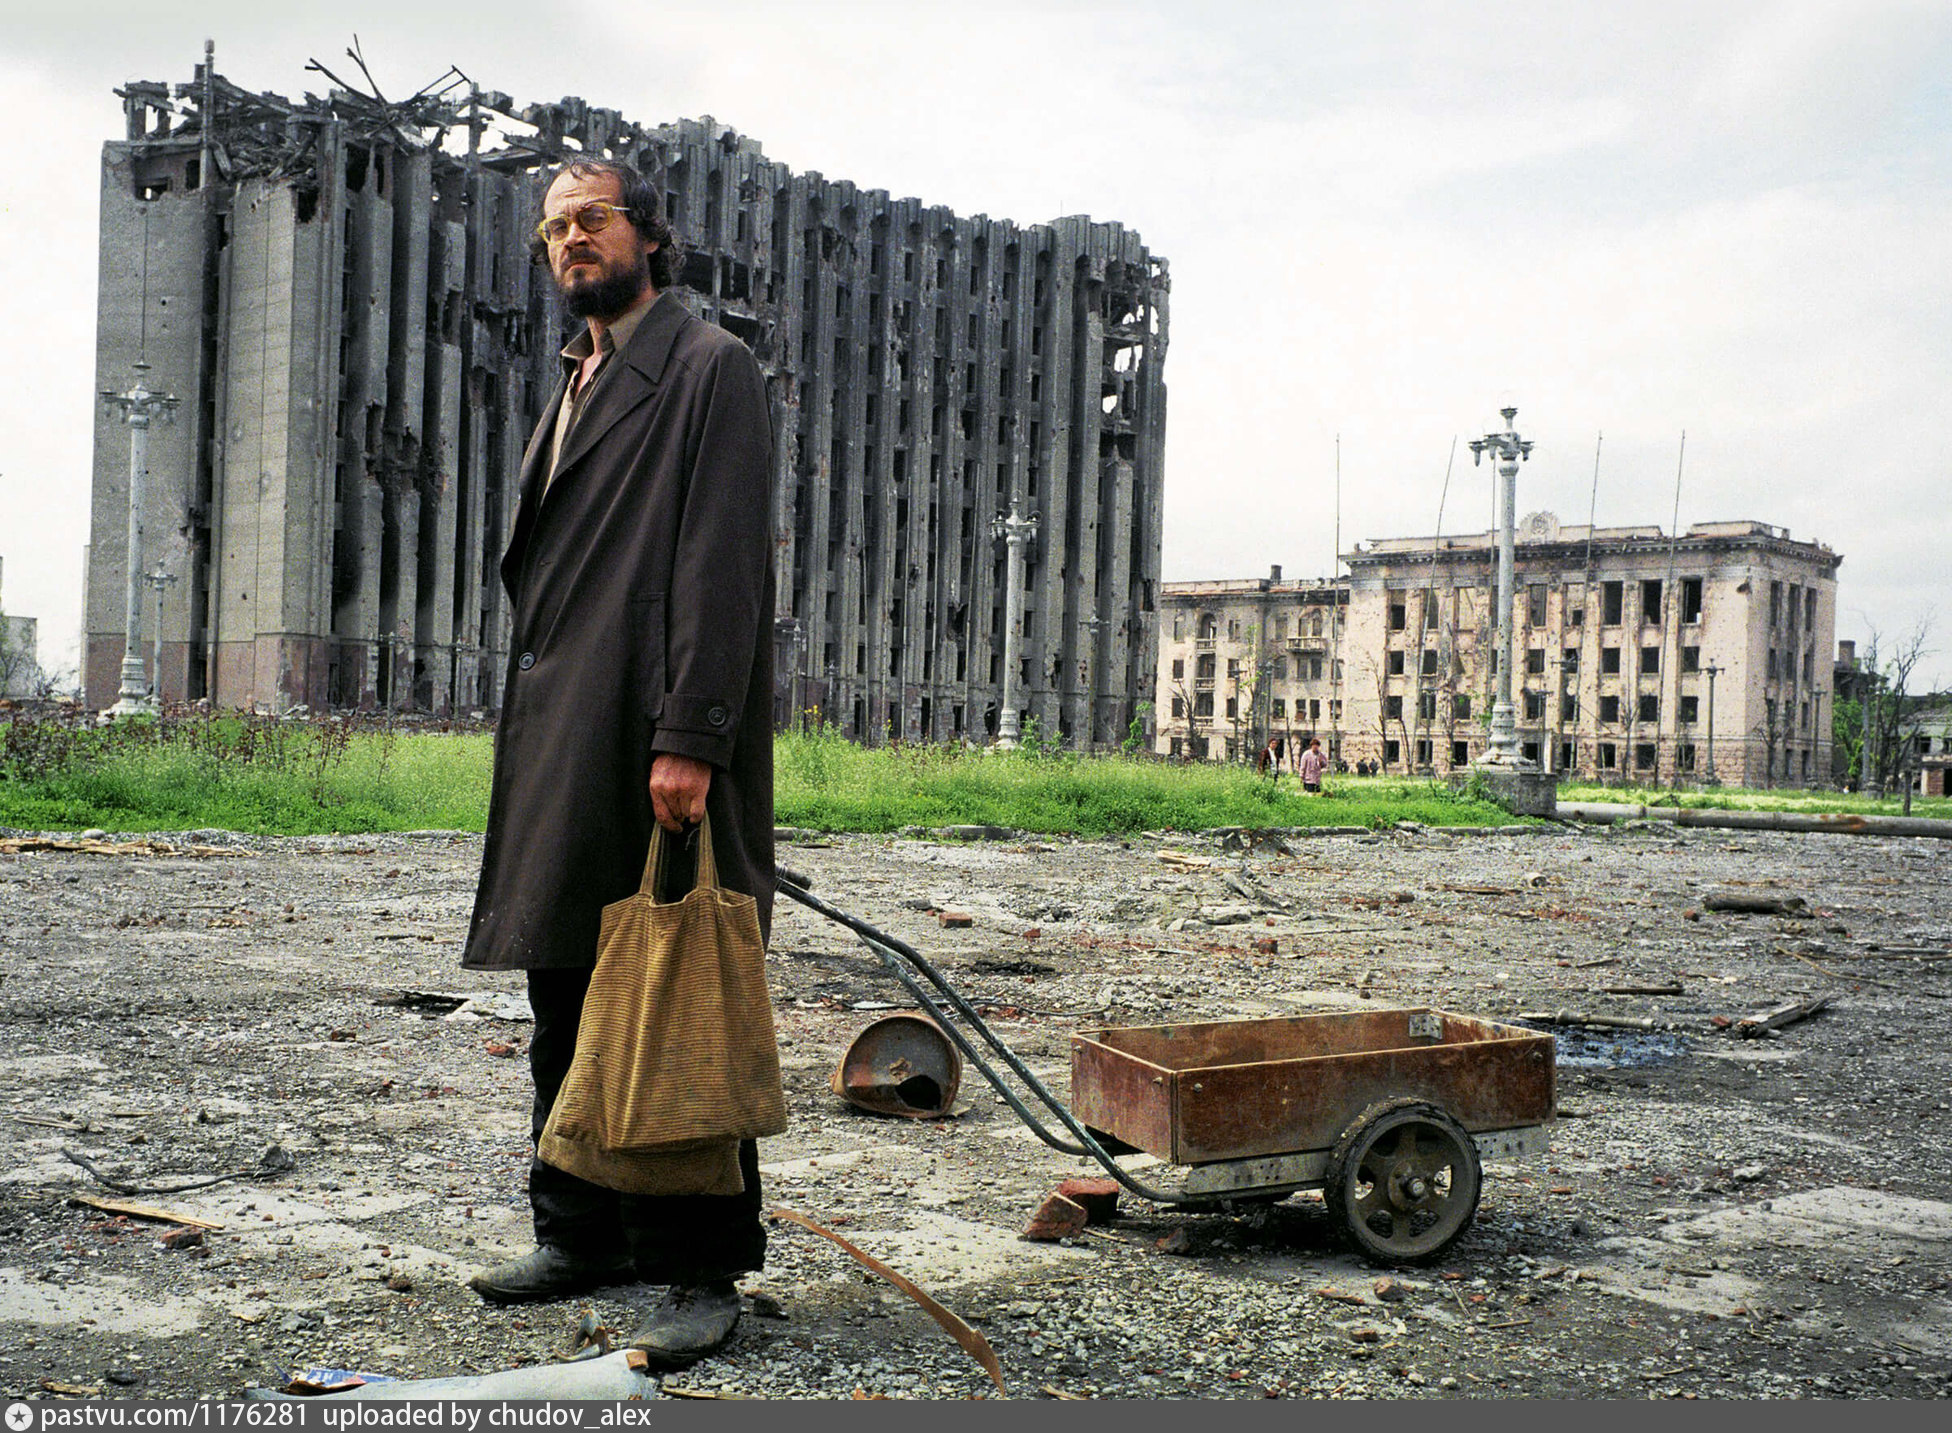 Чечня, 1995, фотографии Кшиштофа Миллера